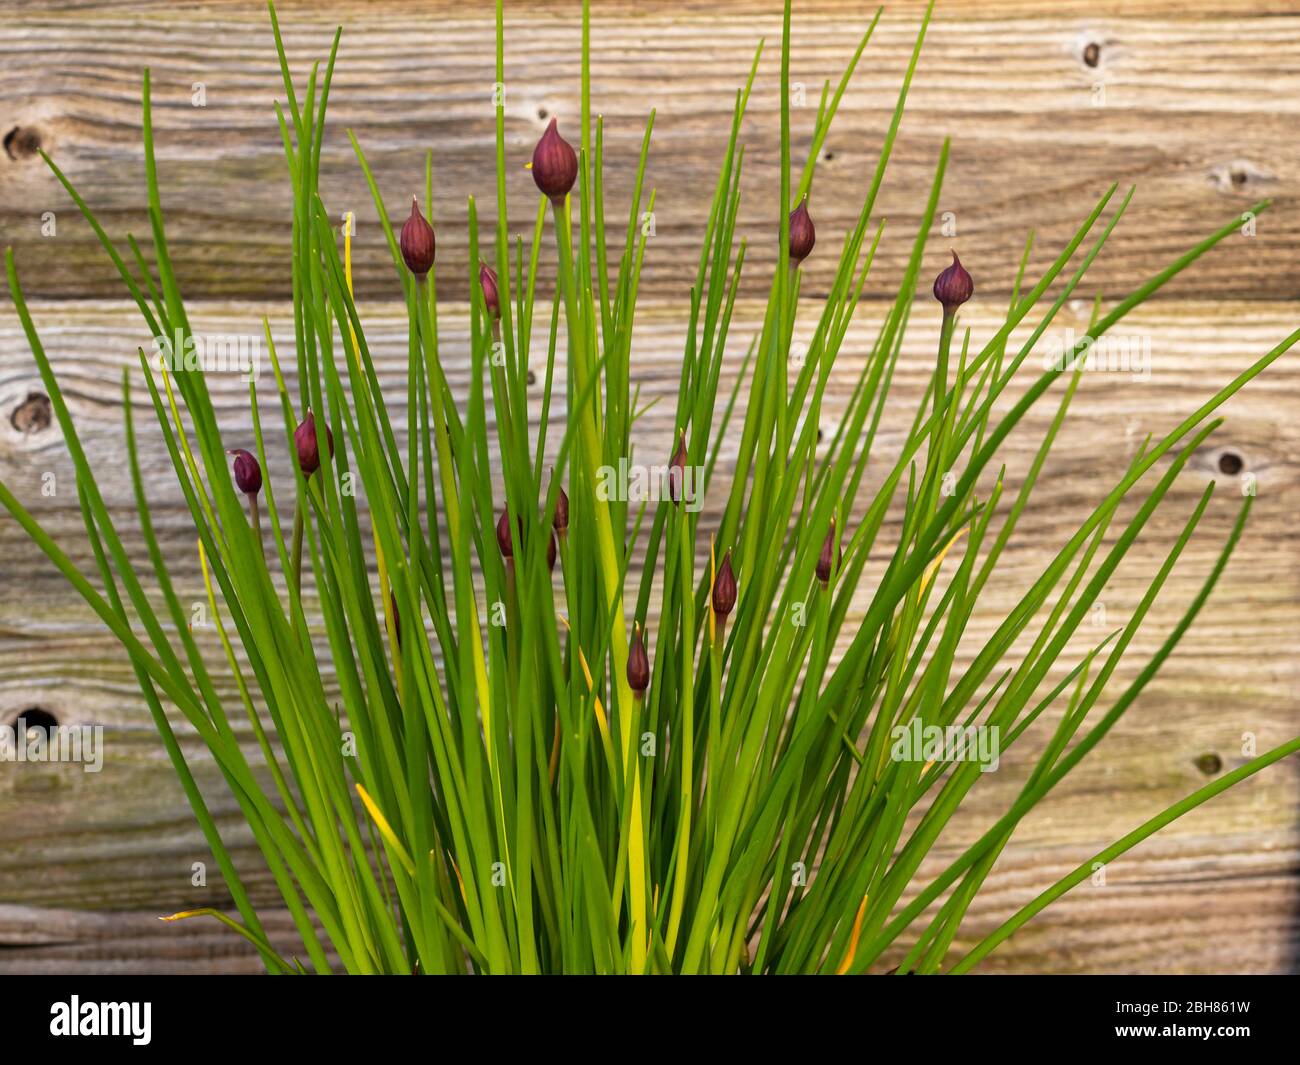 Allium Schnittlauch Pflanze mit hübschen Blütenknospen und grünen Blättern neben einem hölzernen Gartenzaun Stockfoto